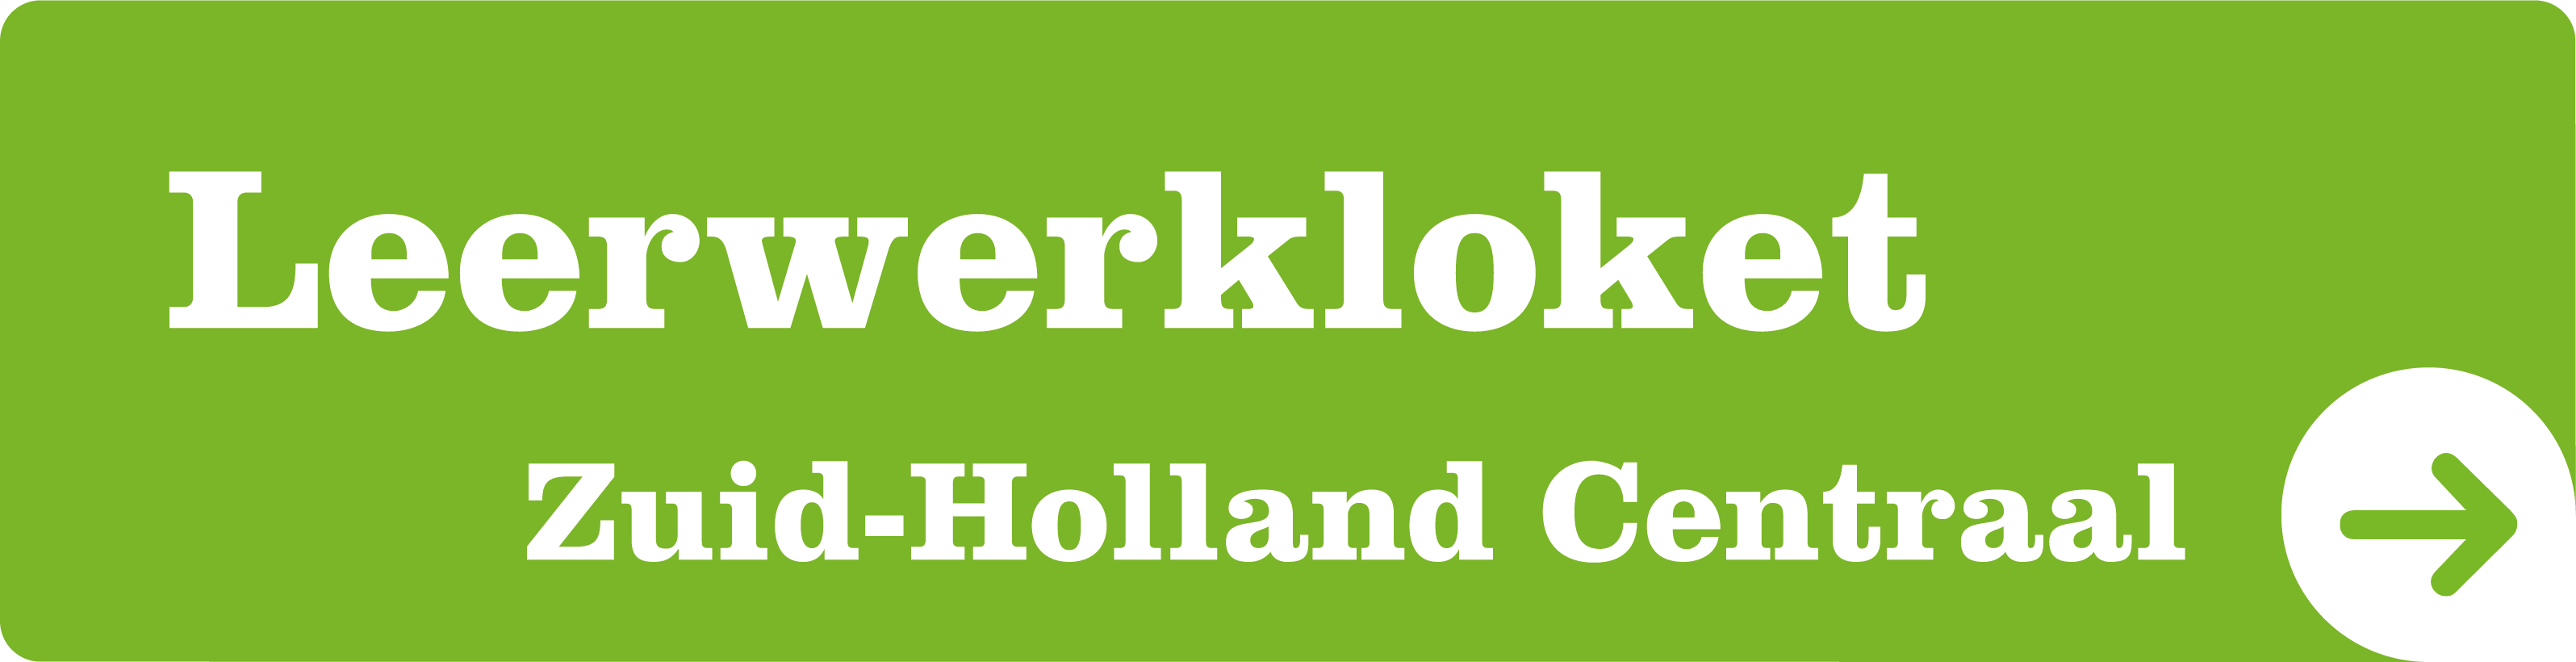 Leerwerkloket Zuid-Holland Centraal